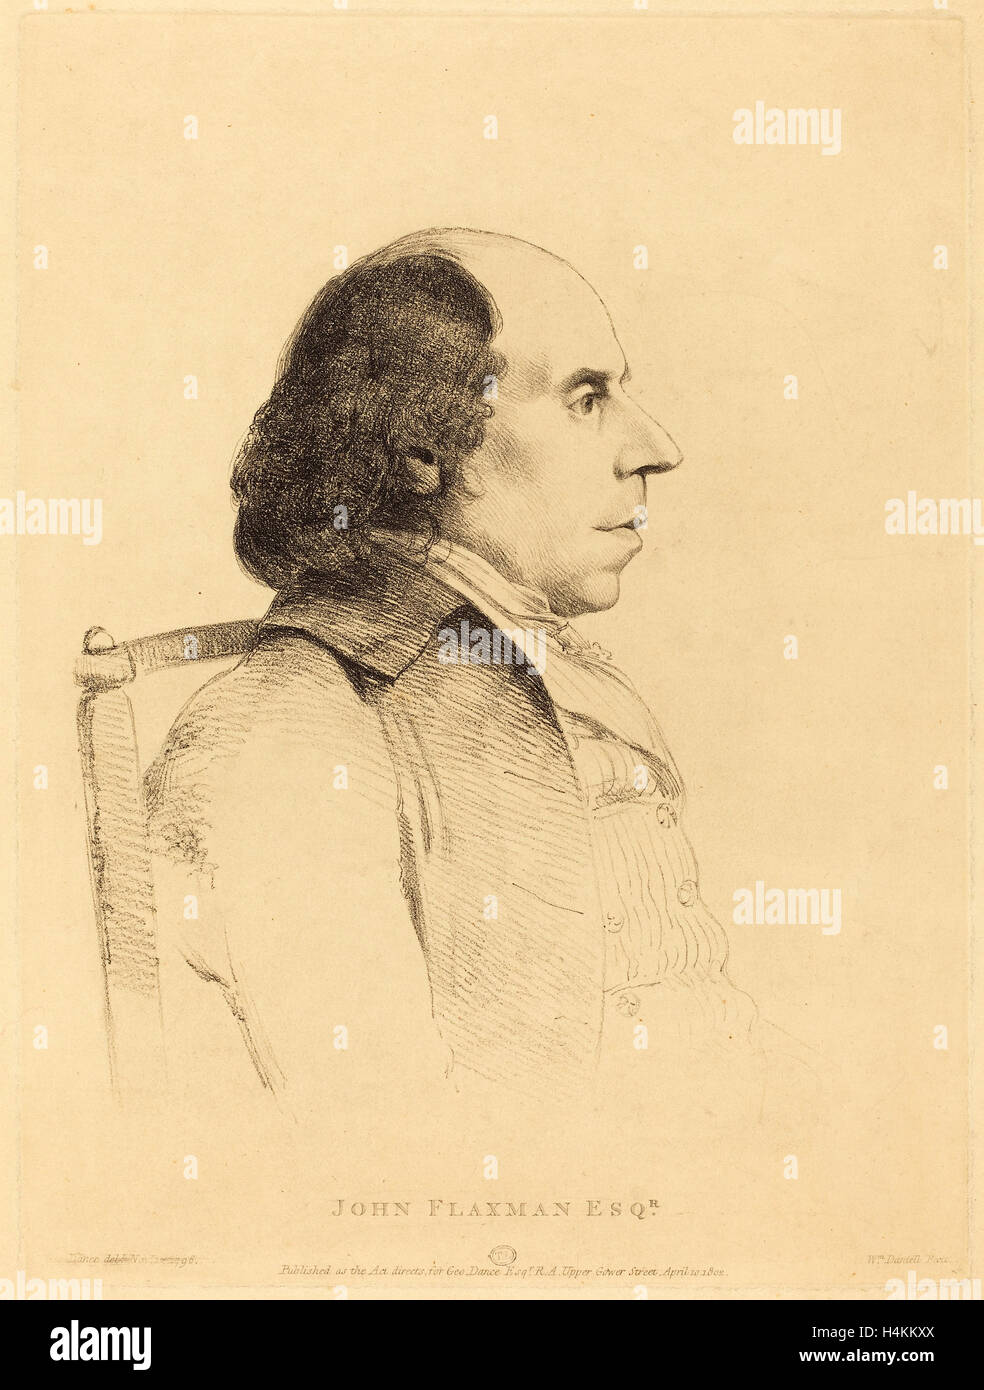 William Daniell après George Dance II (britannique, 1769 - 1837), John Flaxman, lithographie, 1796 Banque D'Images